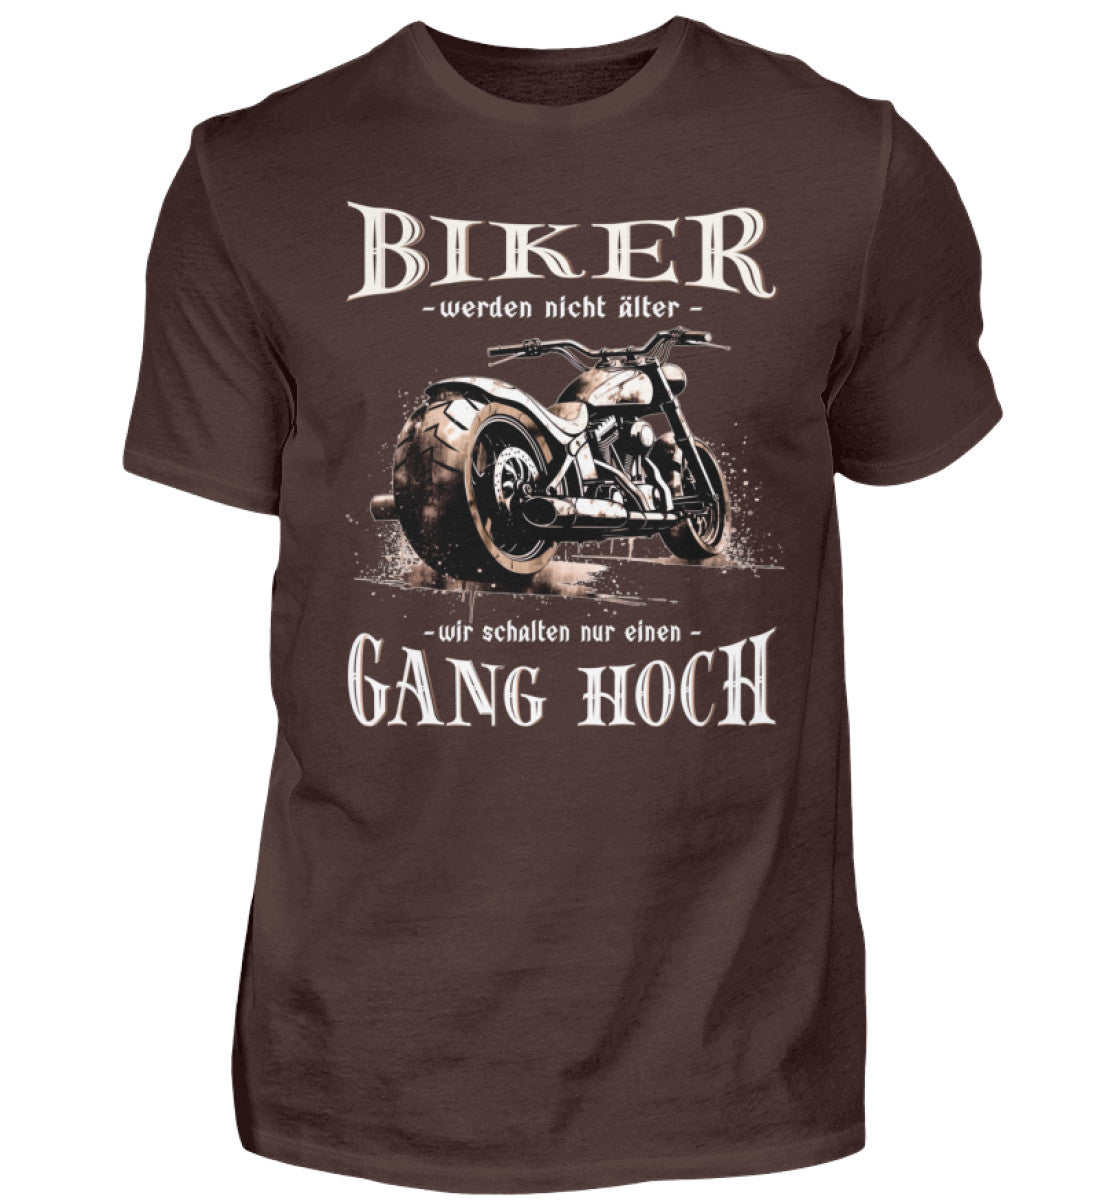 Ein Biker T-Shirt für Motorradfahrer von Wingbikers mit dem Aufdruck, Biker werden nicht älter - Wir schalten nur einen Gang hoch! - in braun.